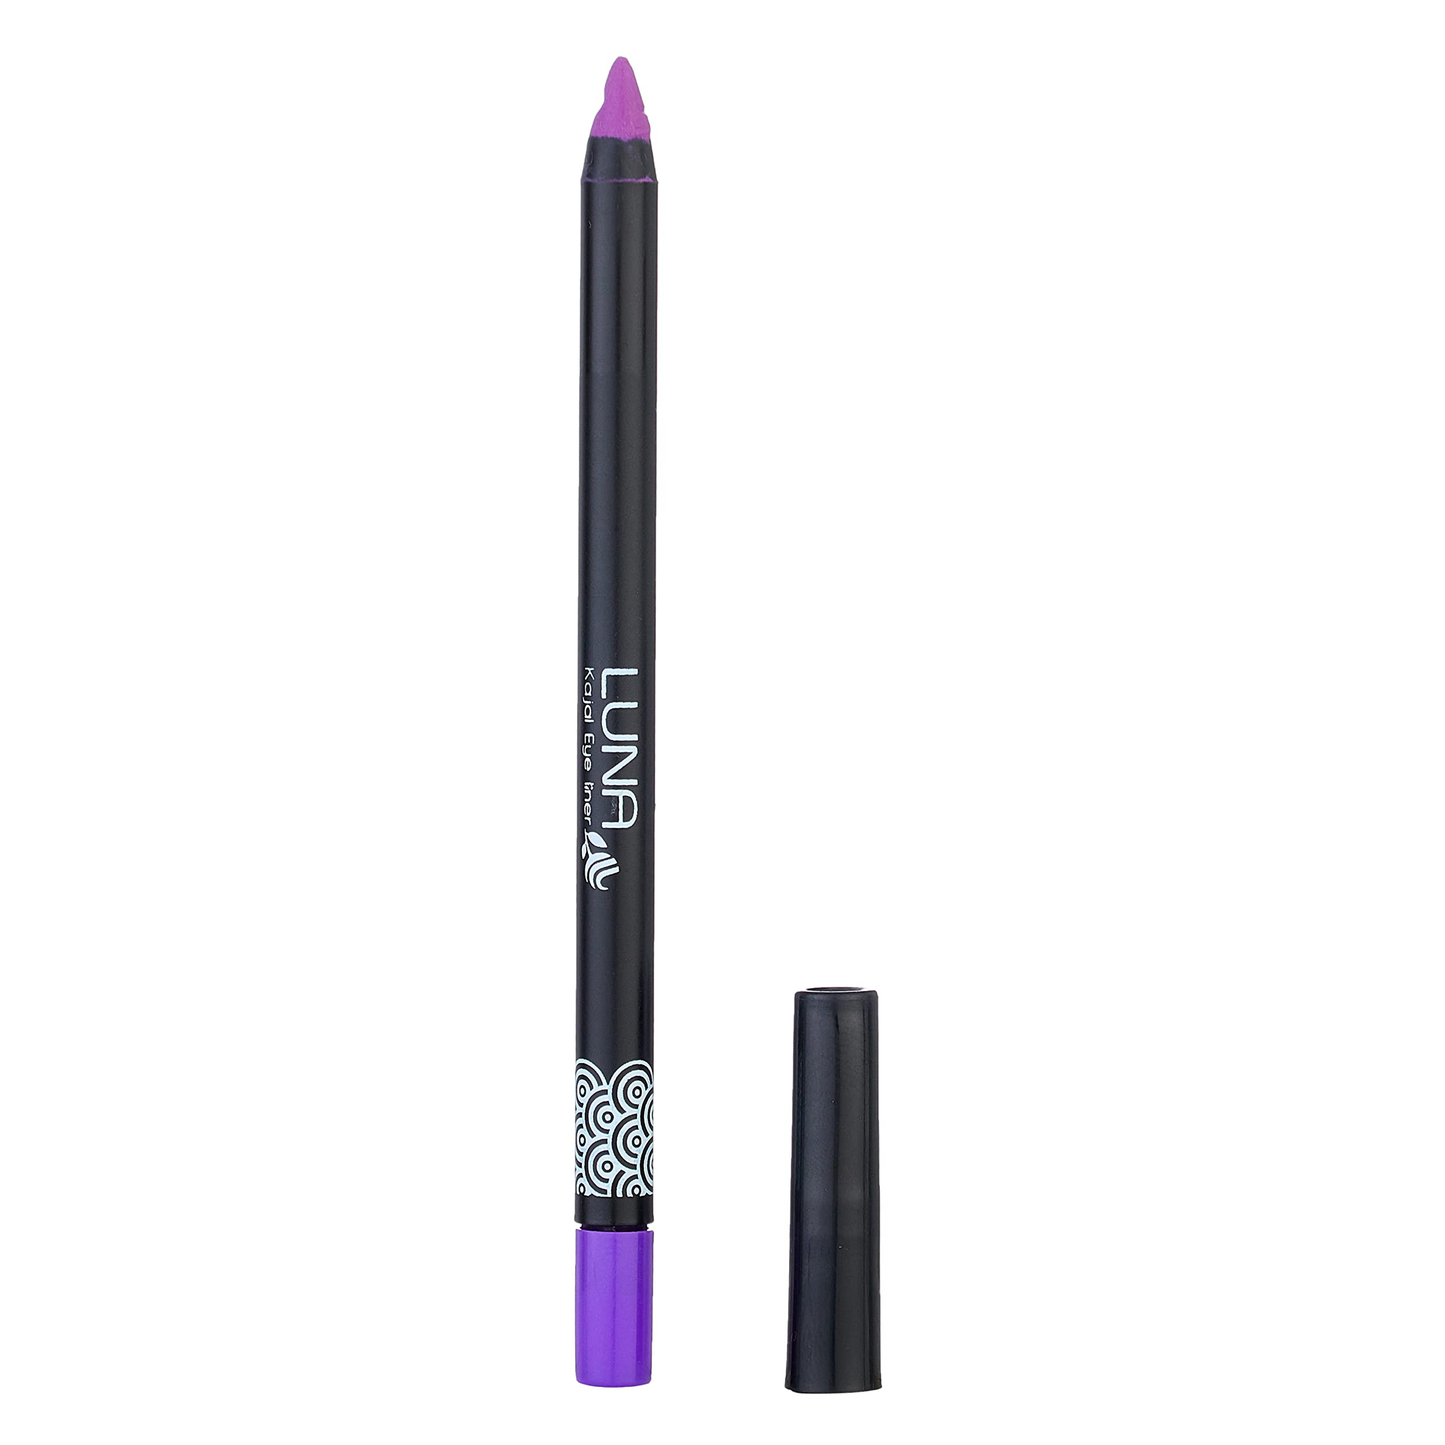 Luna Kajal Soft Eye Liner Pencil - Violet No. 6